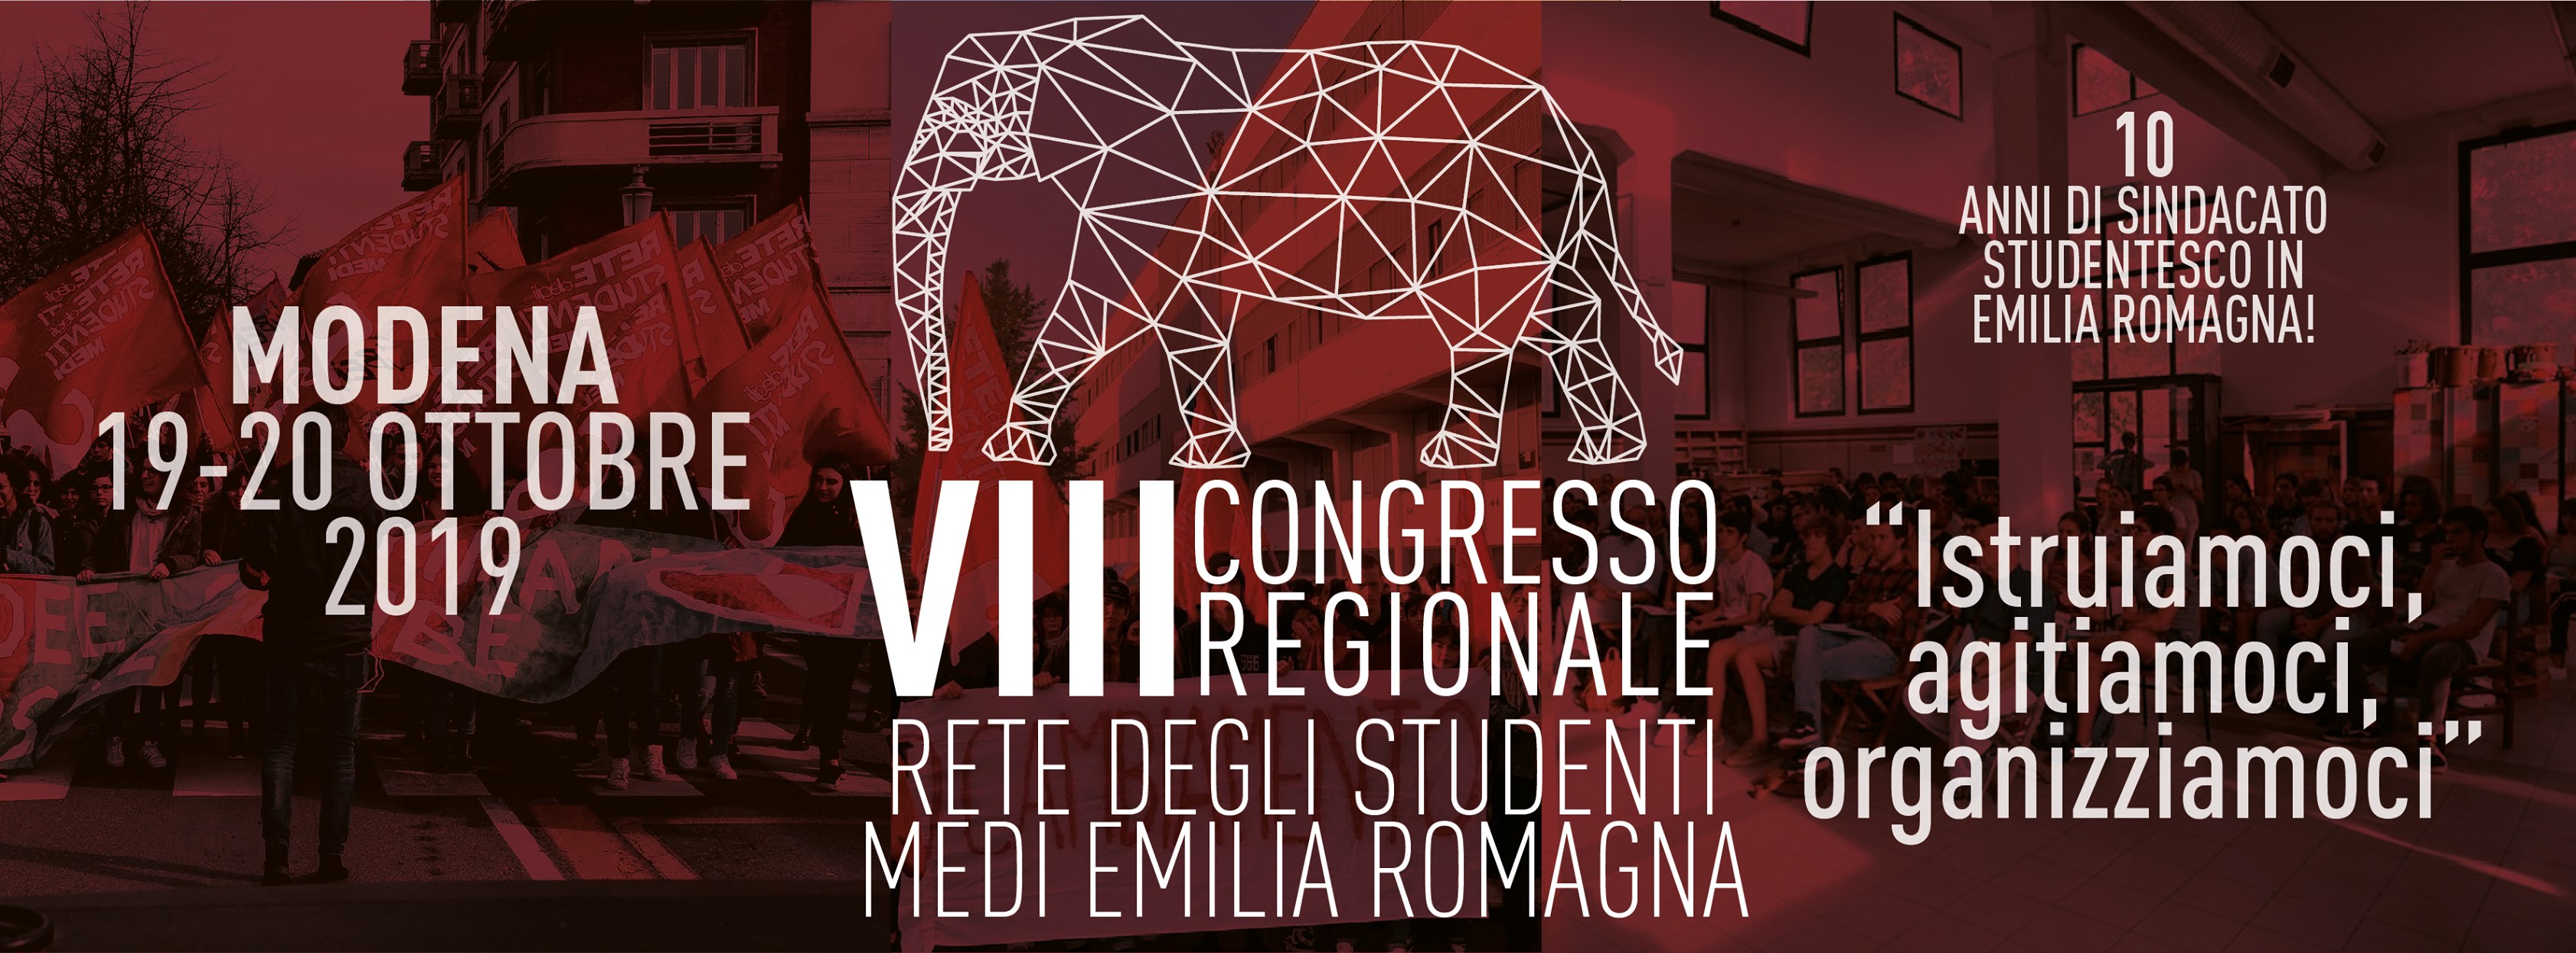 VIII CONGRESSO REGIONALE - Rete degli Studenti Medi dell’Emilia Romagna